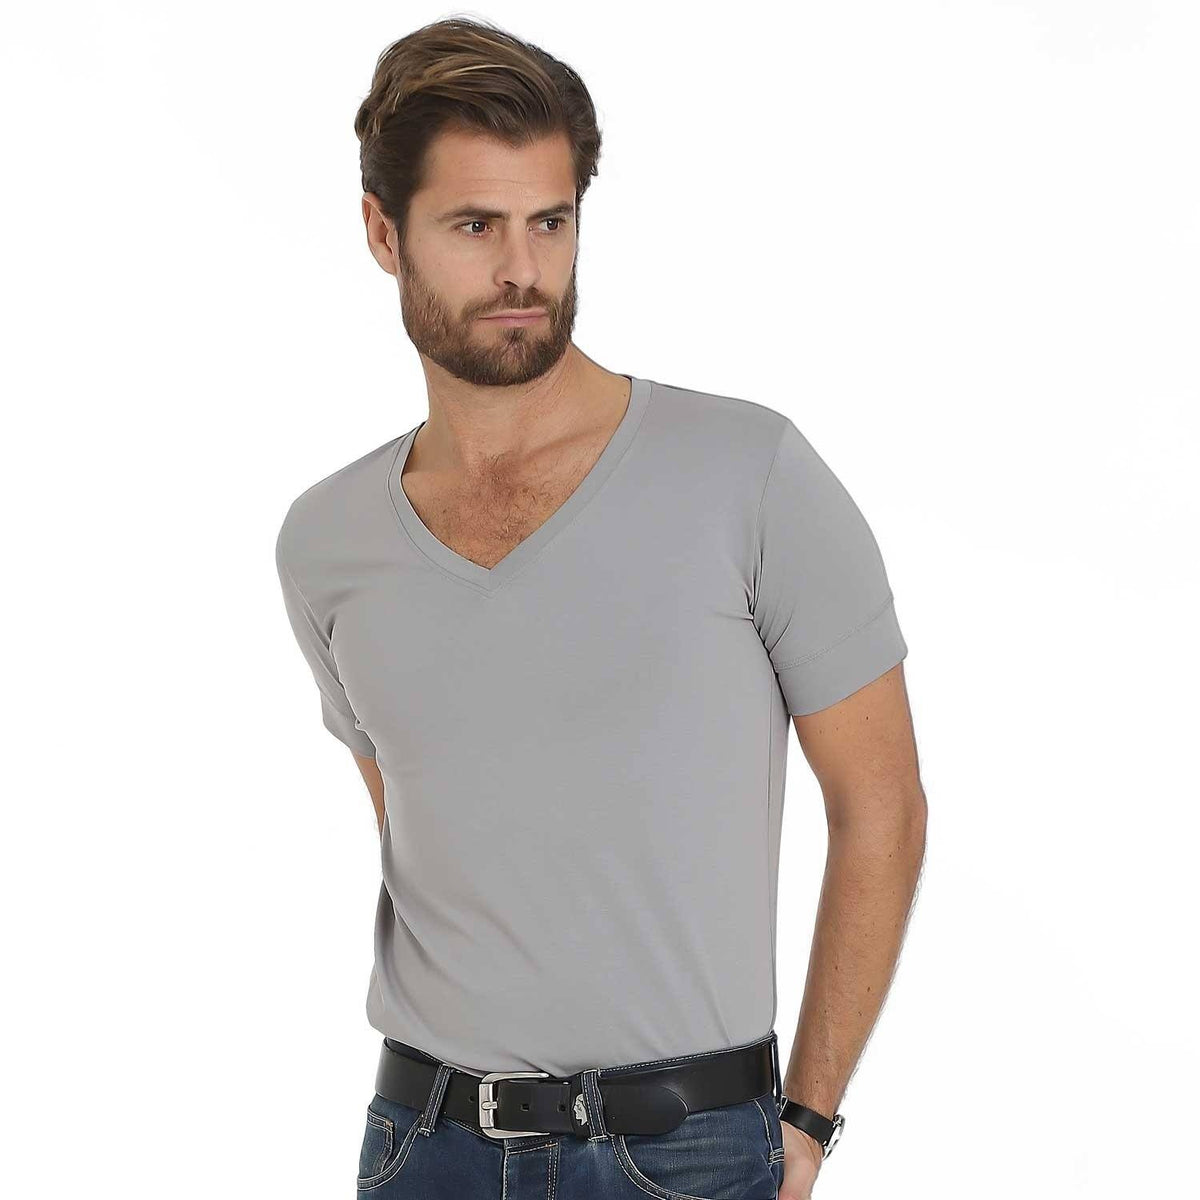 Florence – Grey V-Neck – T-Shirts – Sumisura